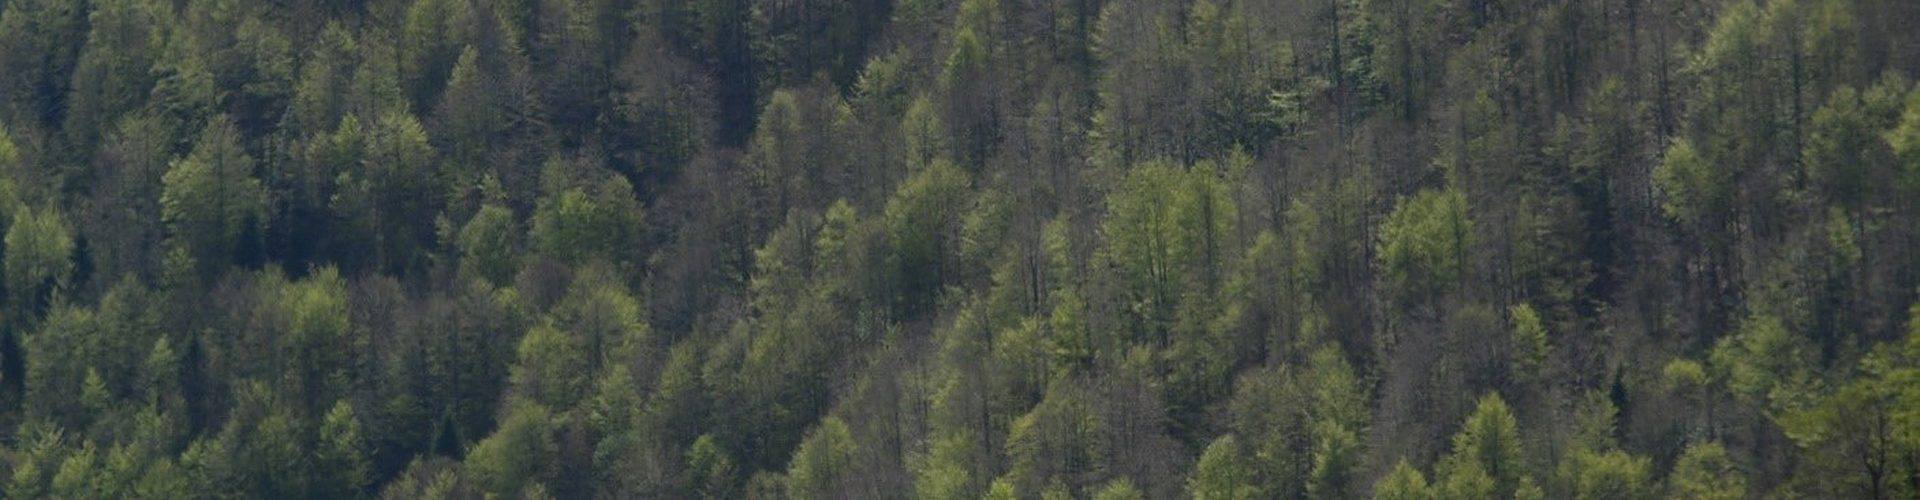 Rendre les forêts plus résilientes